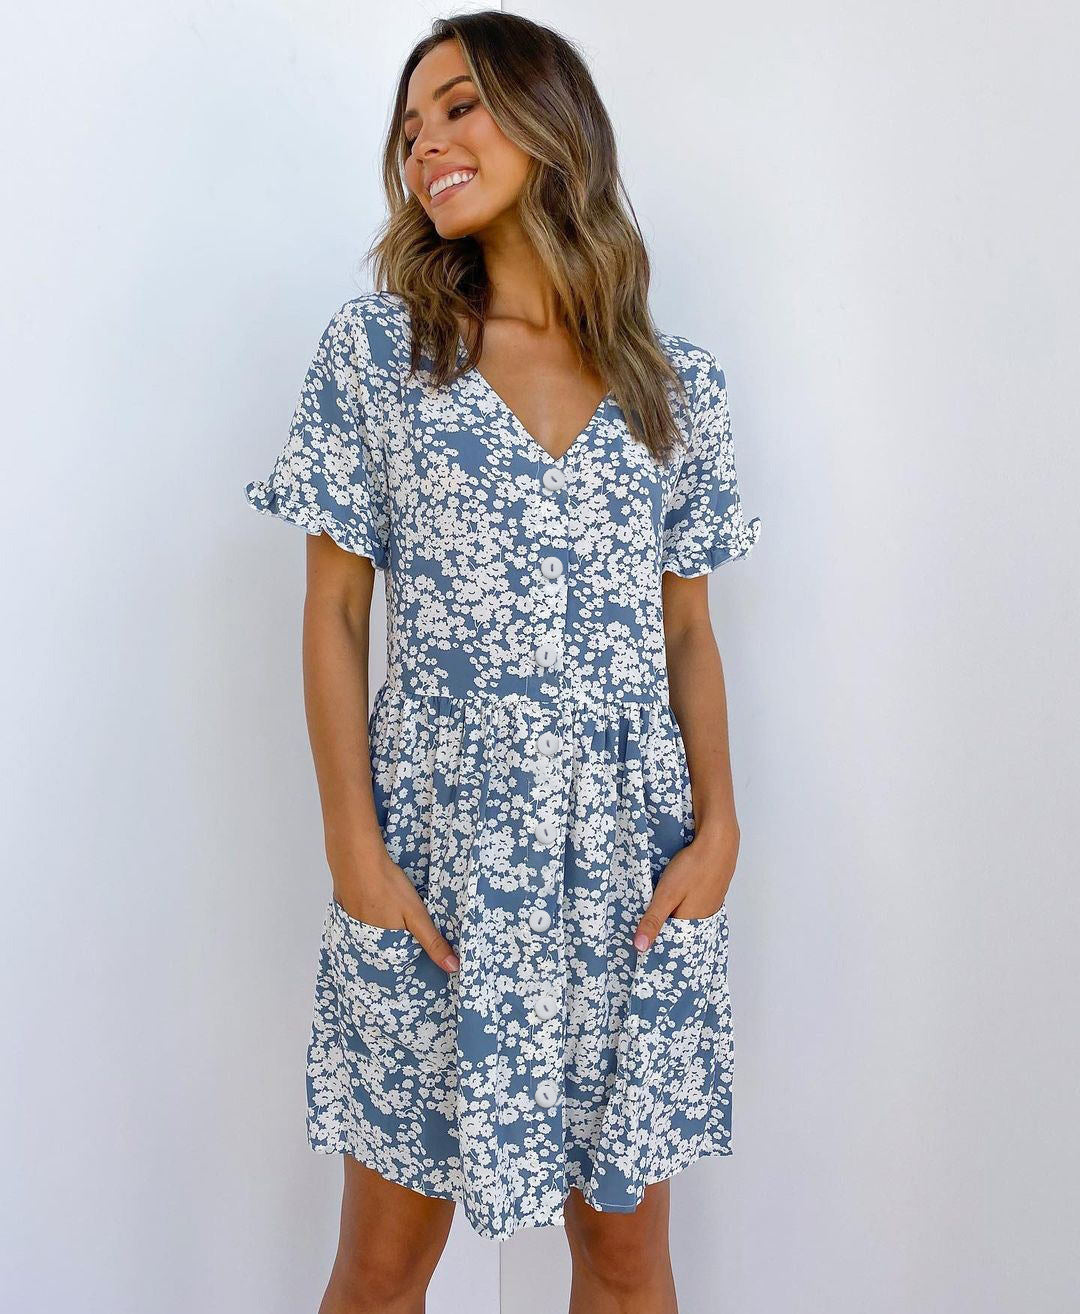 Women’s Summer Short Sleeve Mini Dress